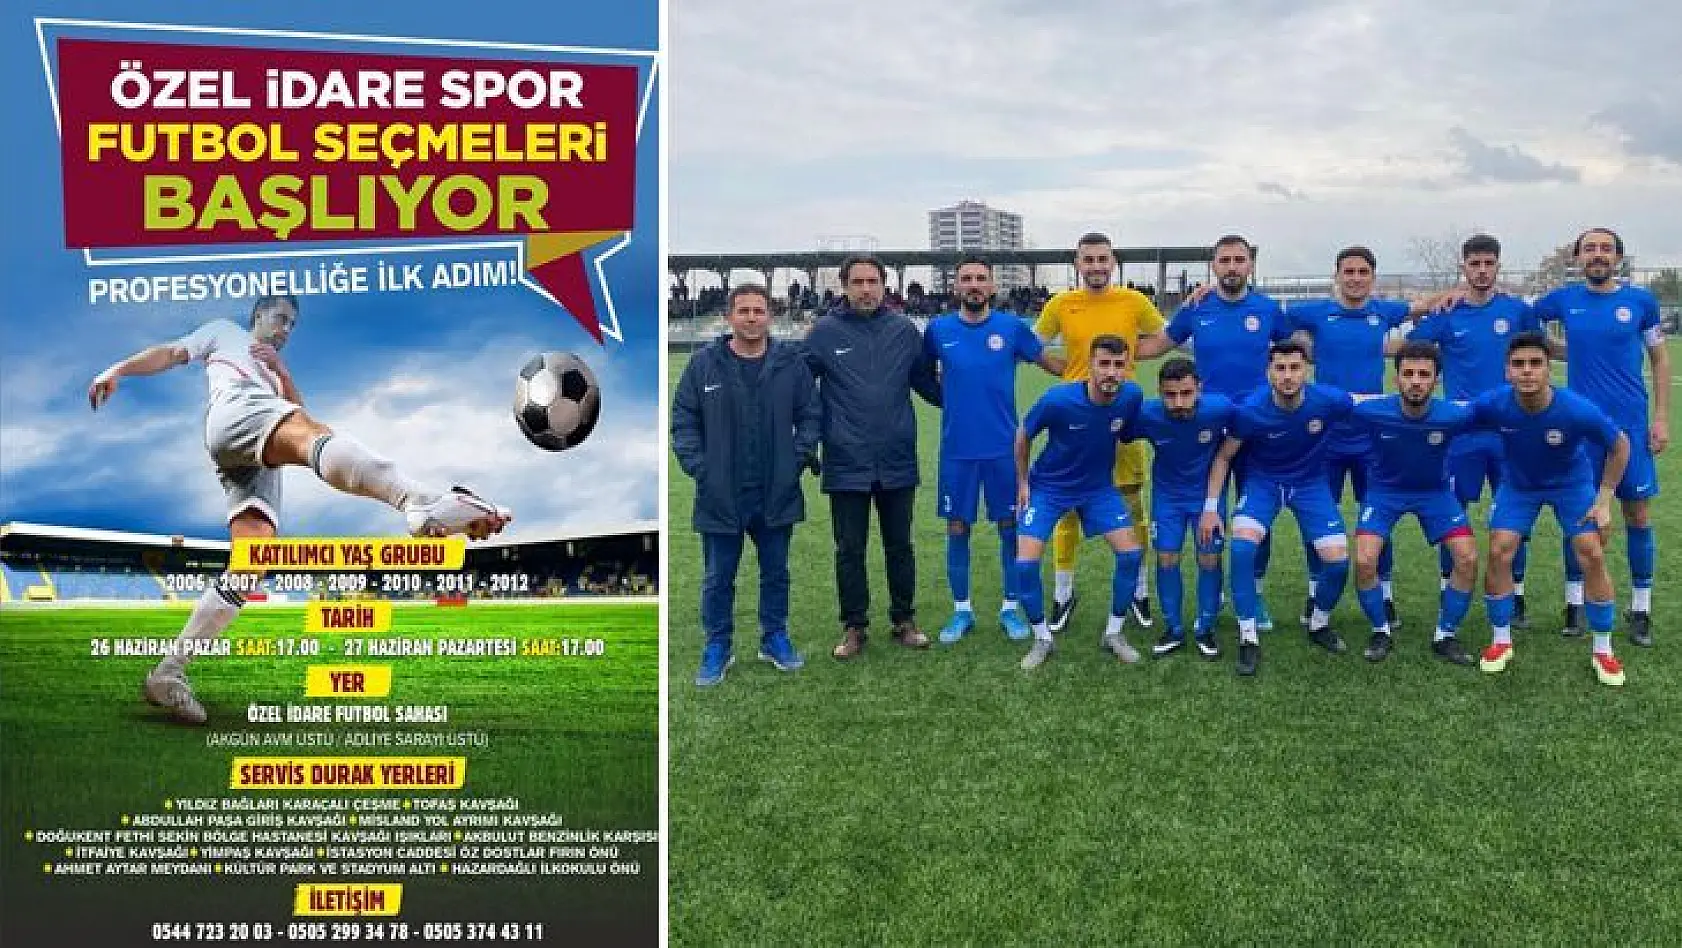 İl Özel İdarespor futbolcu seçmeleri yapacak